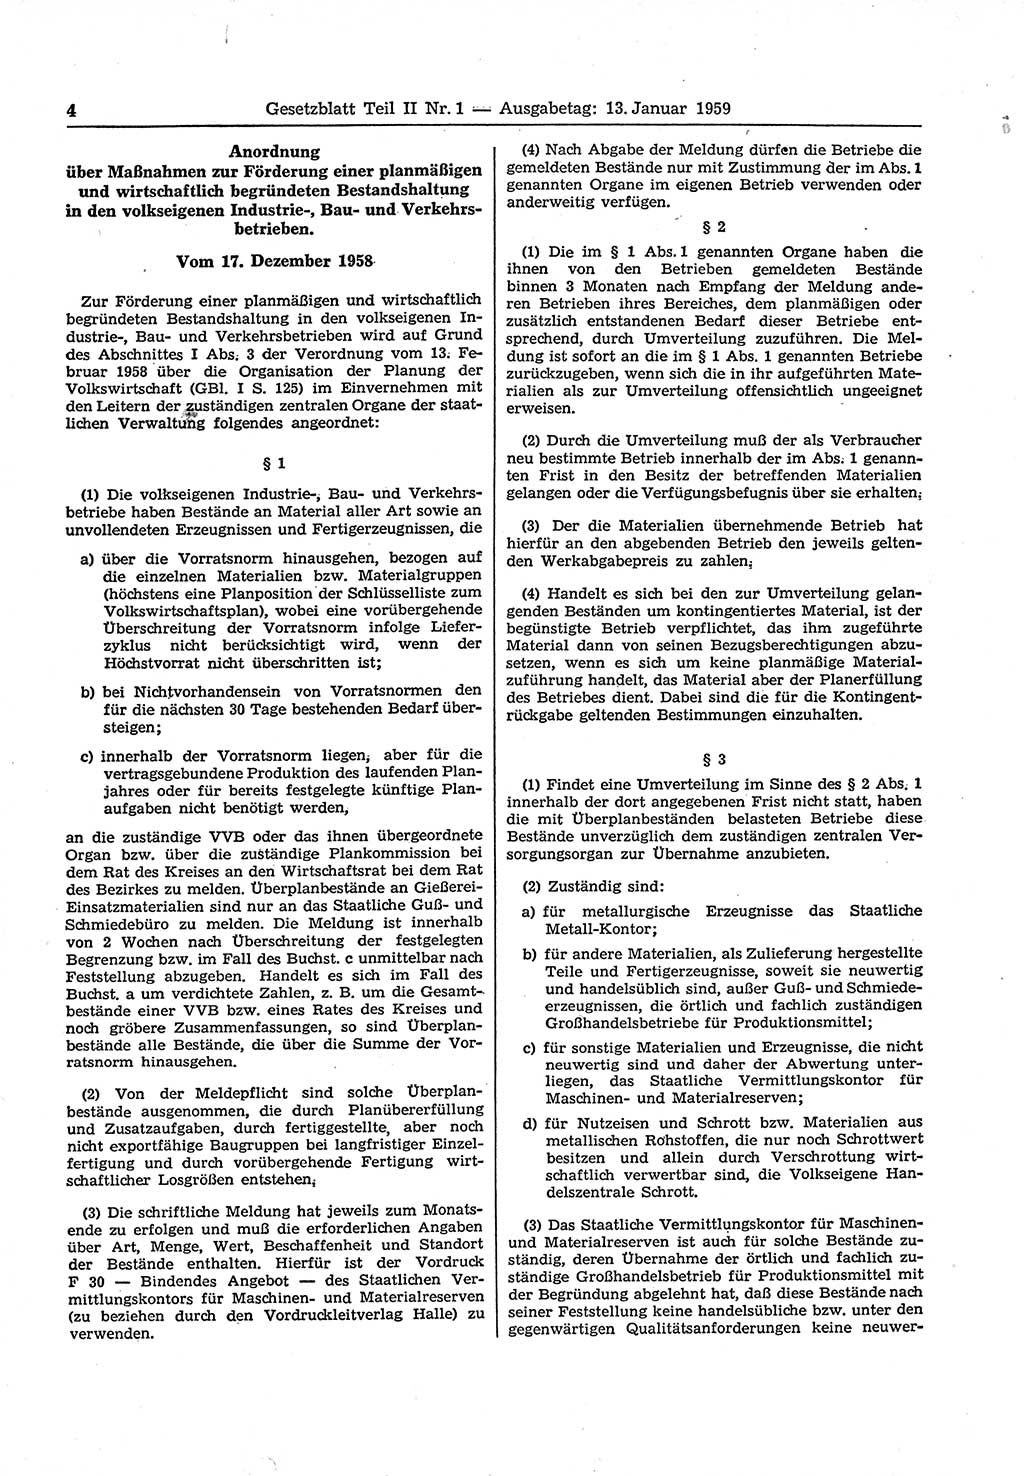 Gesetzblatt (GBl.) der Deutschen Demokratischen Republik (DDR) Teil ⅠⅠ 1959, Seite 4 (GBl. DDR ⅠⅠ 1959, S. 4)